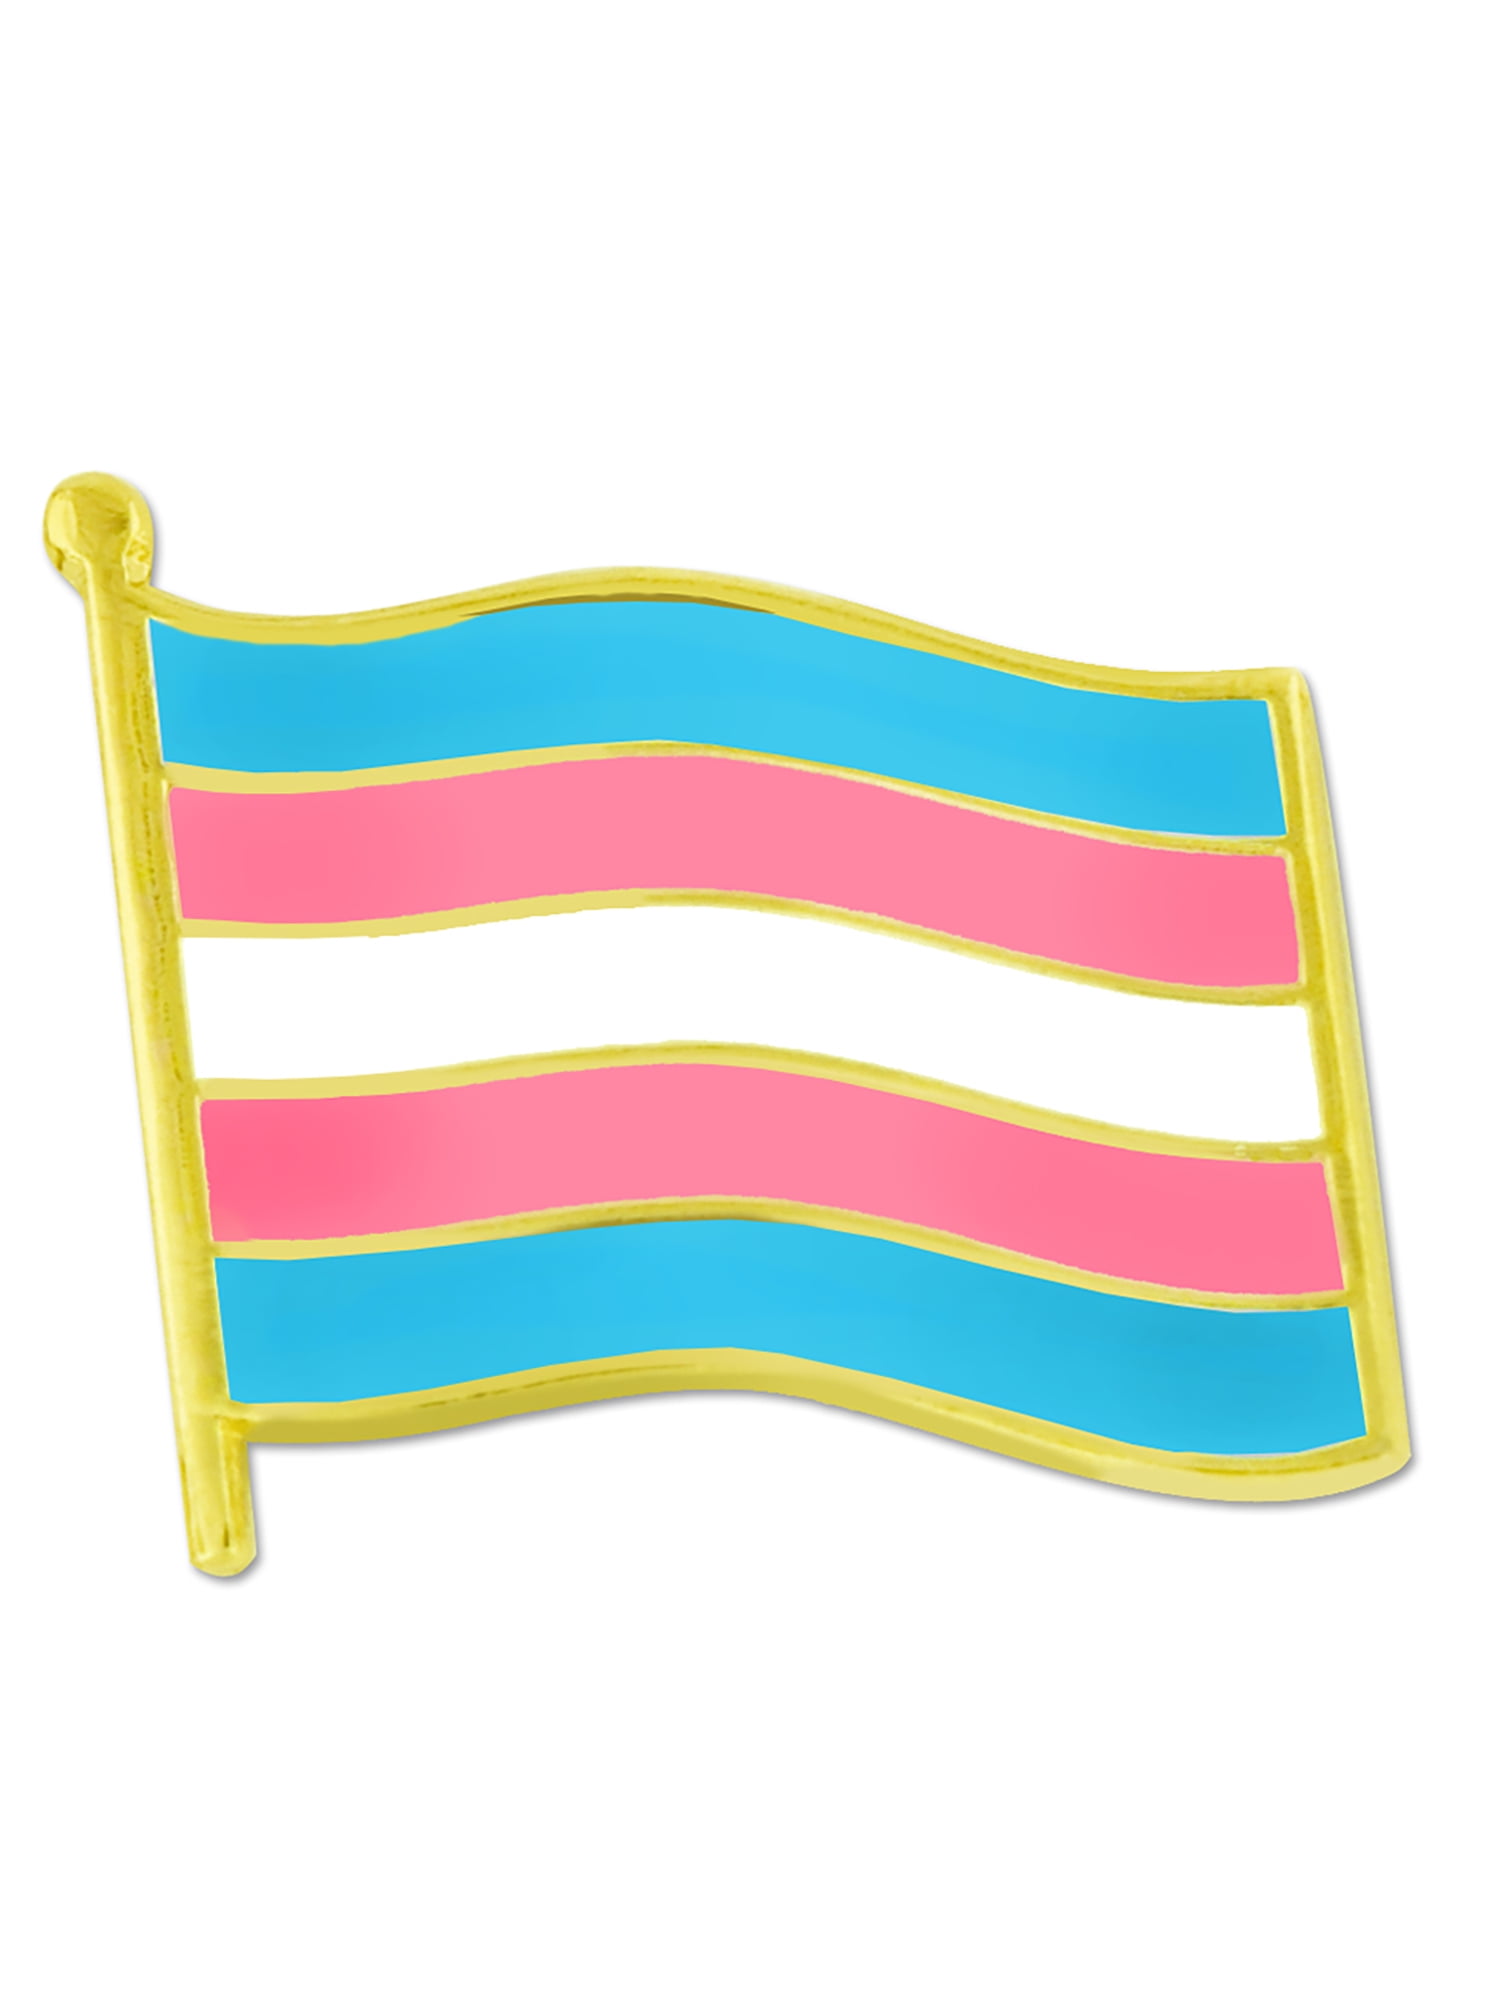 Trans Pride This Is Me Enamel Pin In Transgender Pride Flag Colors Men Novelty Ekbotefurniture Com